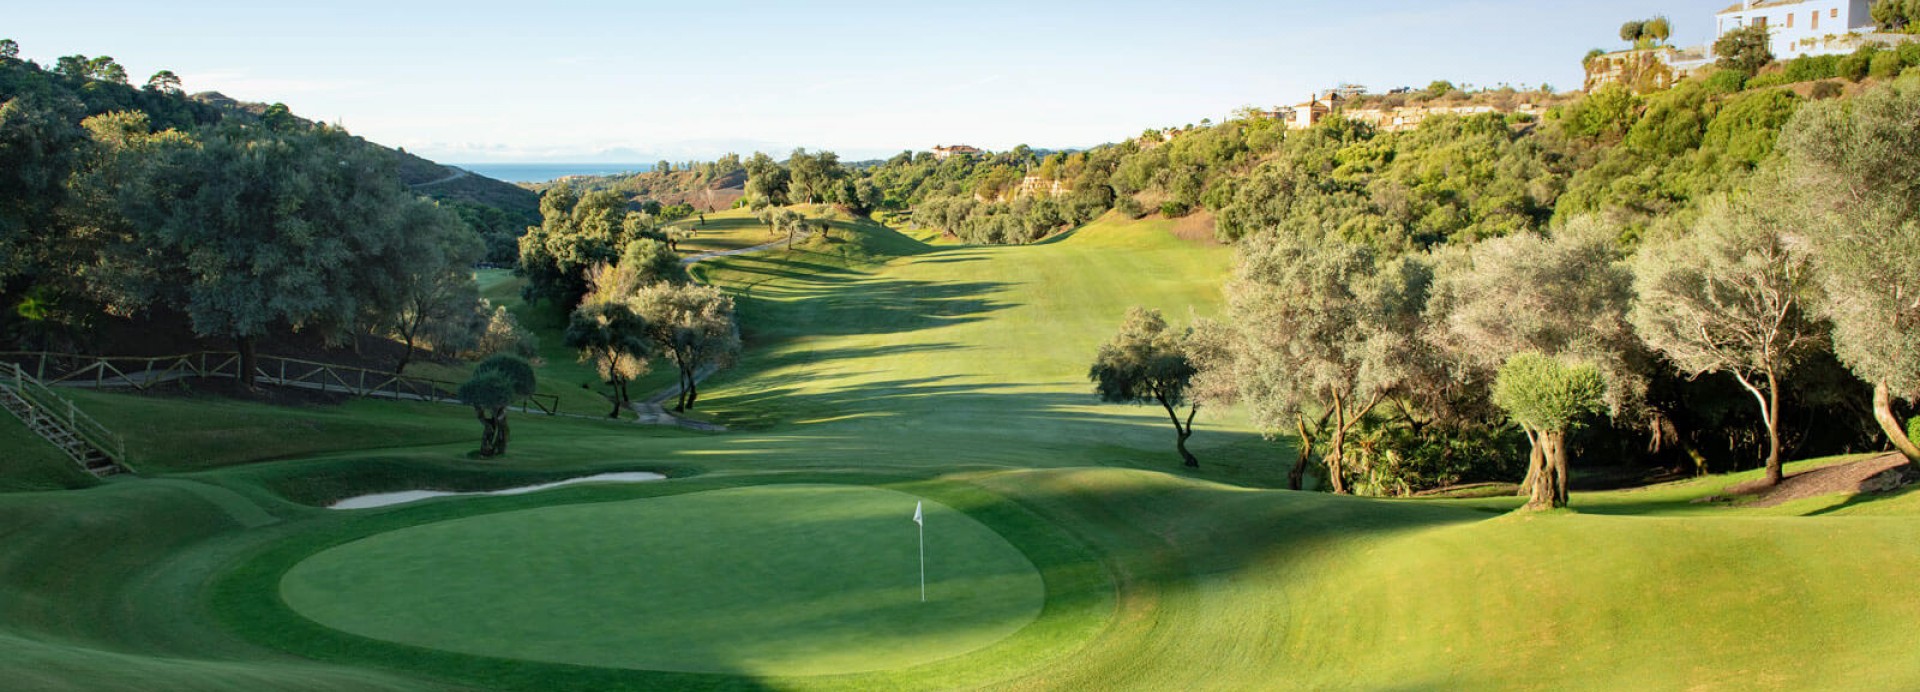 Villa Padierna - Tramores Golf  | Golfové zájezdy, golfová dovolená, luxusní golf